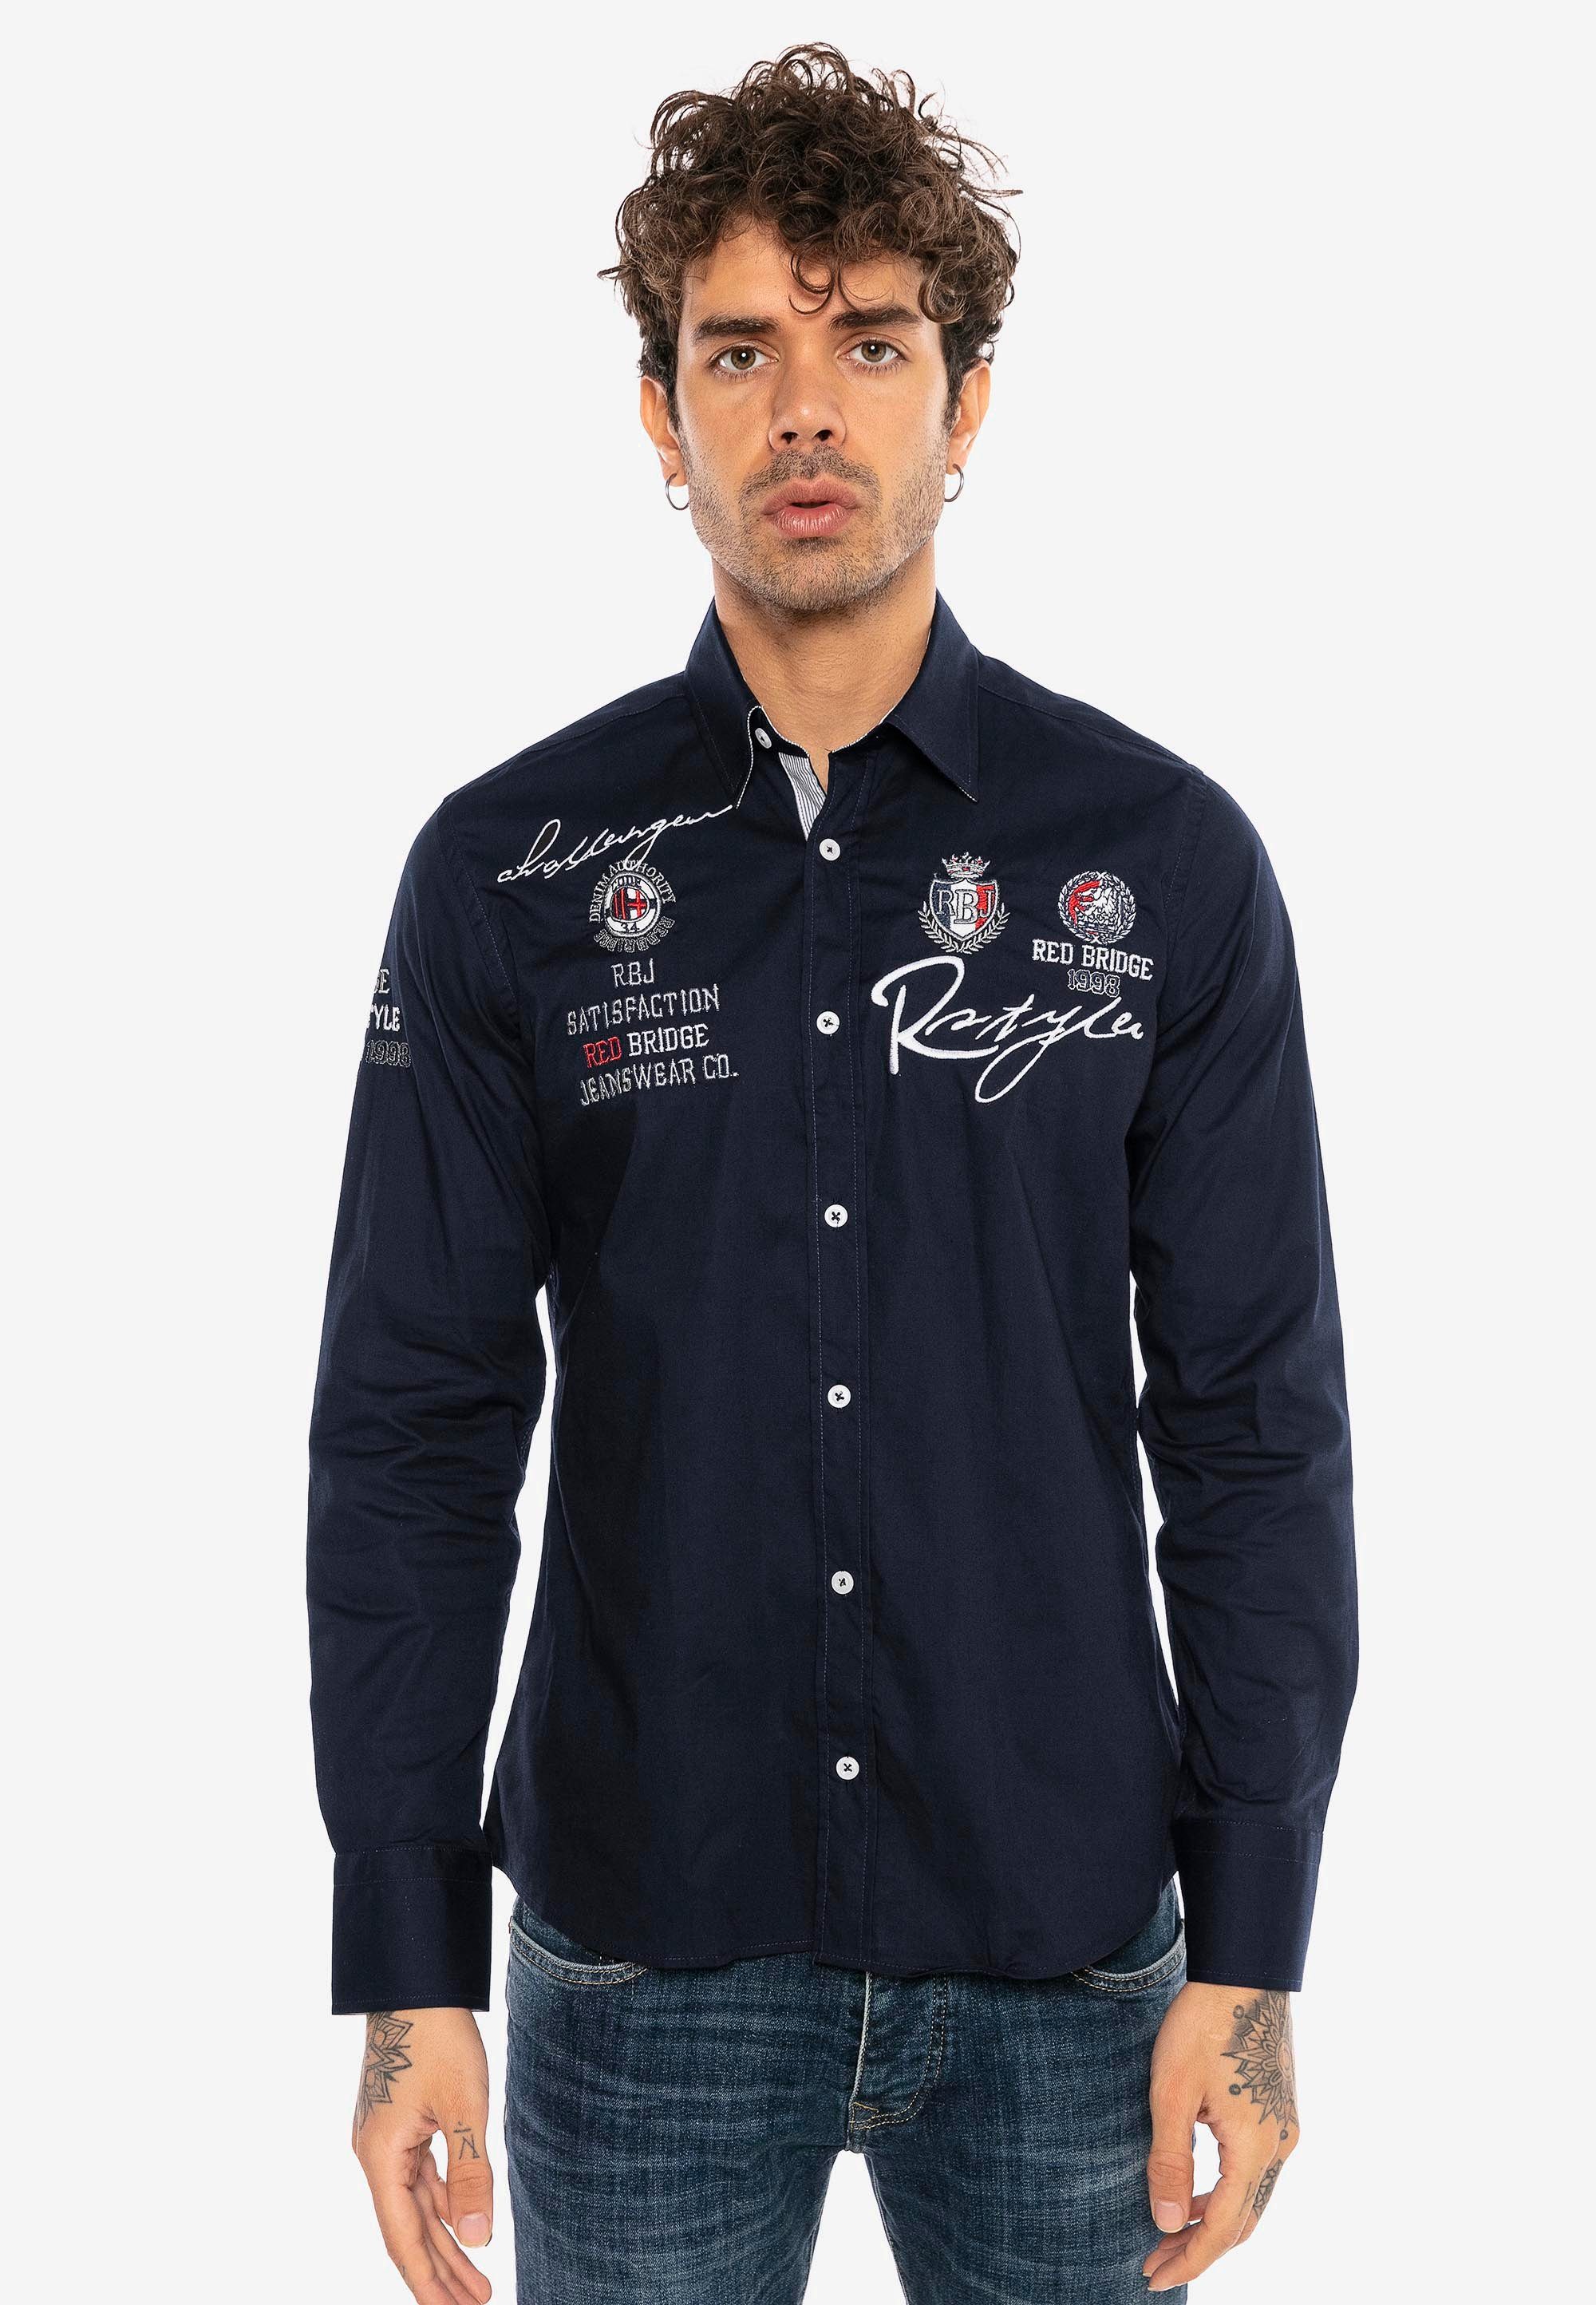 [Wird zu einem supergünstigen Preis angeboten!] RedBridge Langarmhemd Jersey City dunkelblau Stickerei Fit-Schnitt Slim mit im